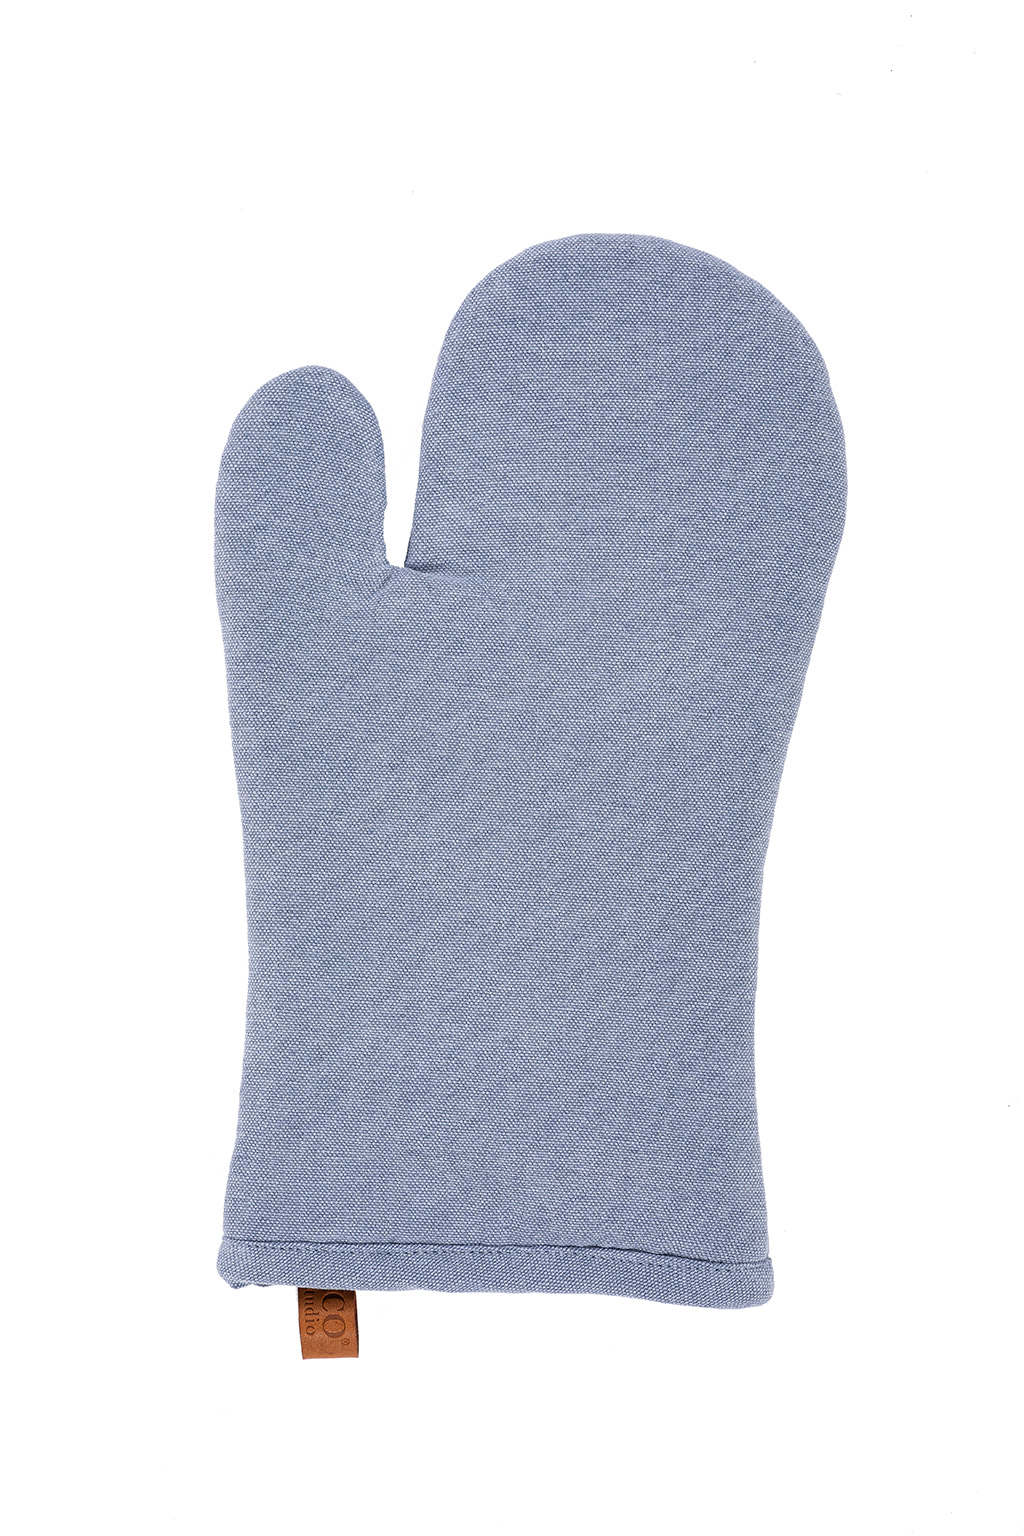 Glove HAVANA 18x32cm, stone blue